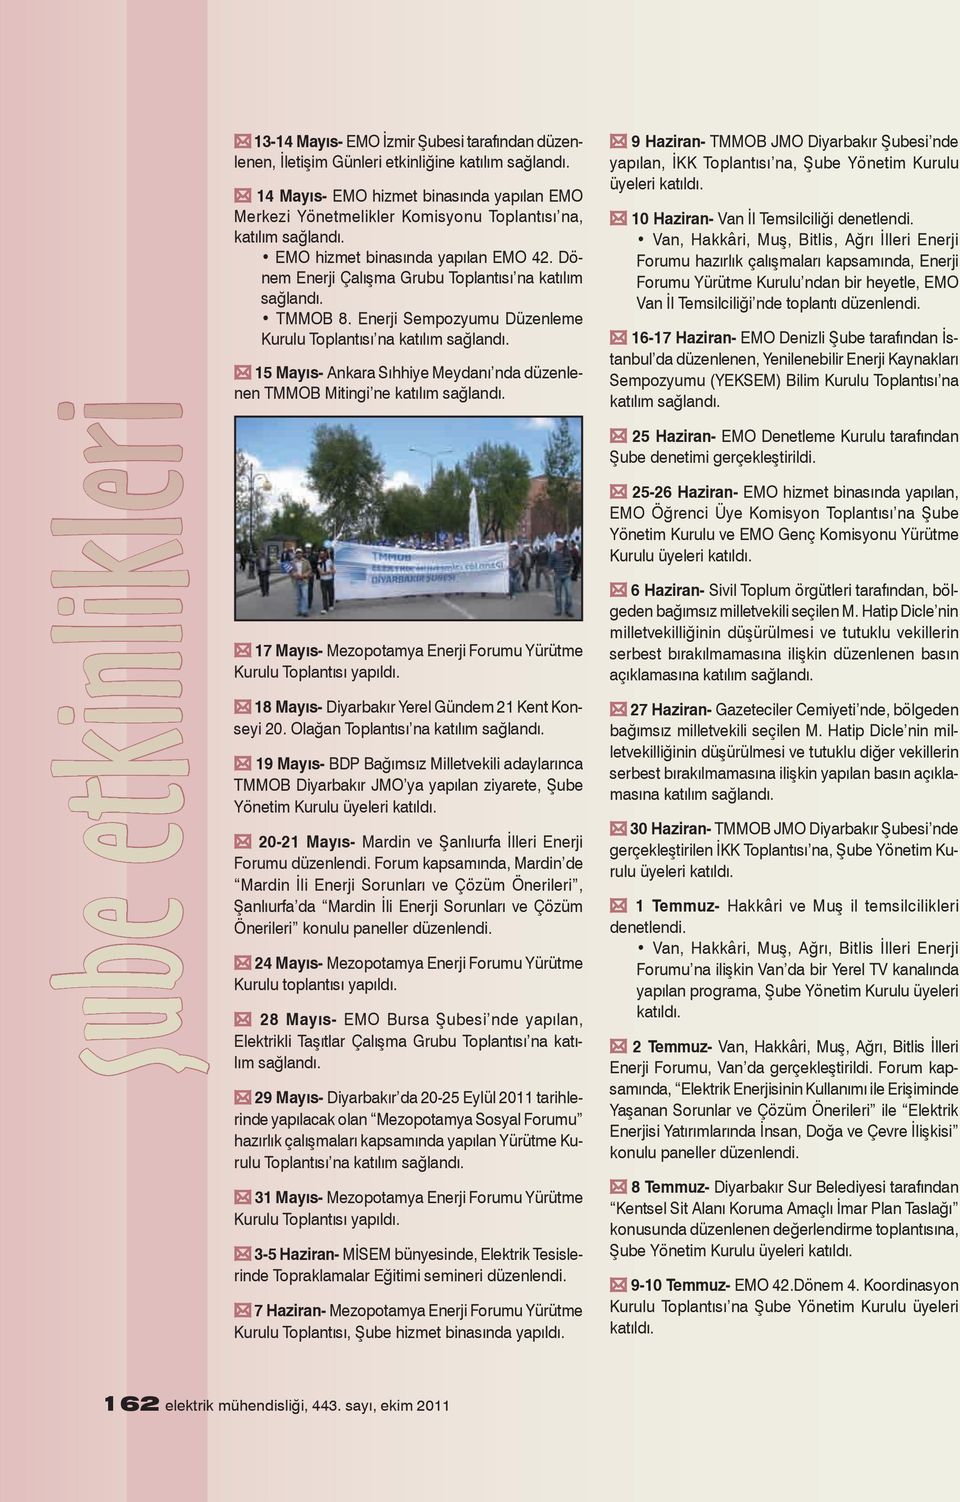 Enerji Sempozyumu Düzenleme Kurulu Toplantısı na 15 Mayıs- Ankara Sıhhiye Meydanı nda düzenlenen TMMOB Mitingi ne 17 Mayıs- Mezopotamya Enerji Forumu Yürütme Kurulu Toplantısı 18 Mayıs- Diyarbakır